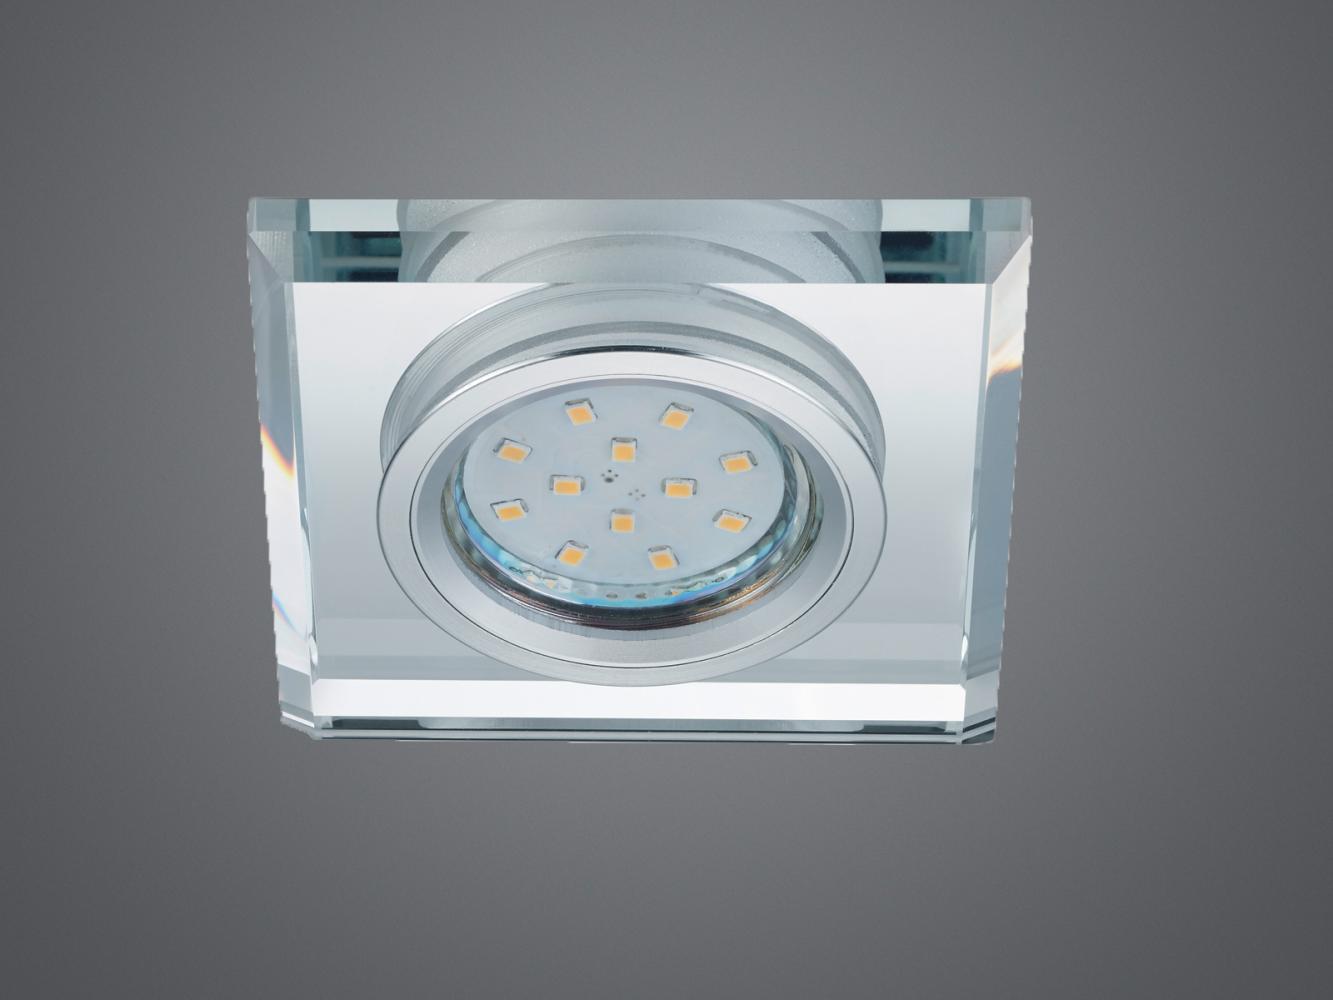 Eckiger Deckeneinbaustrahler PIRIN in Silber Chrom mit Kristallglas 9 x 9cm Bild 1